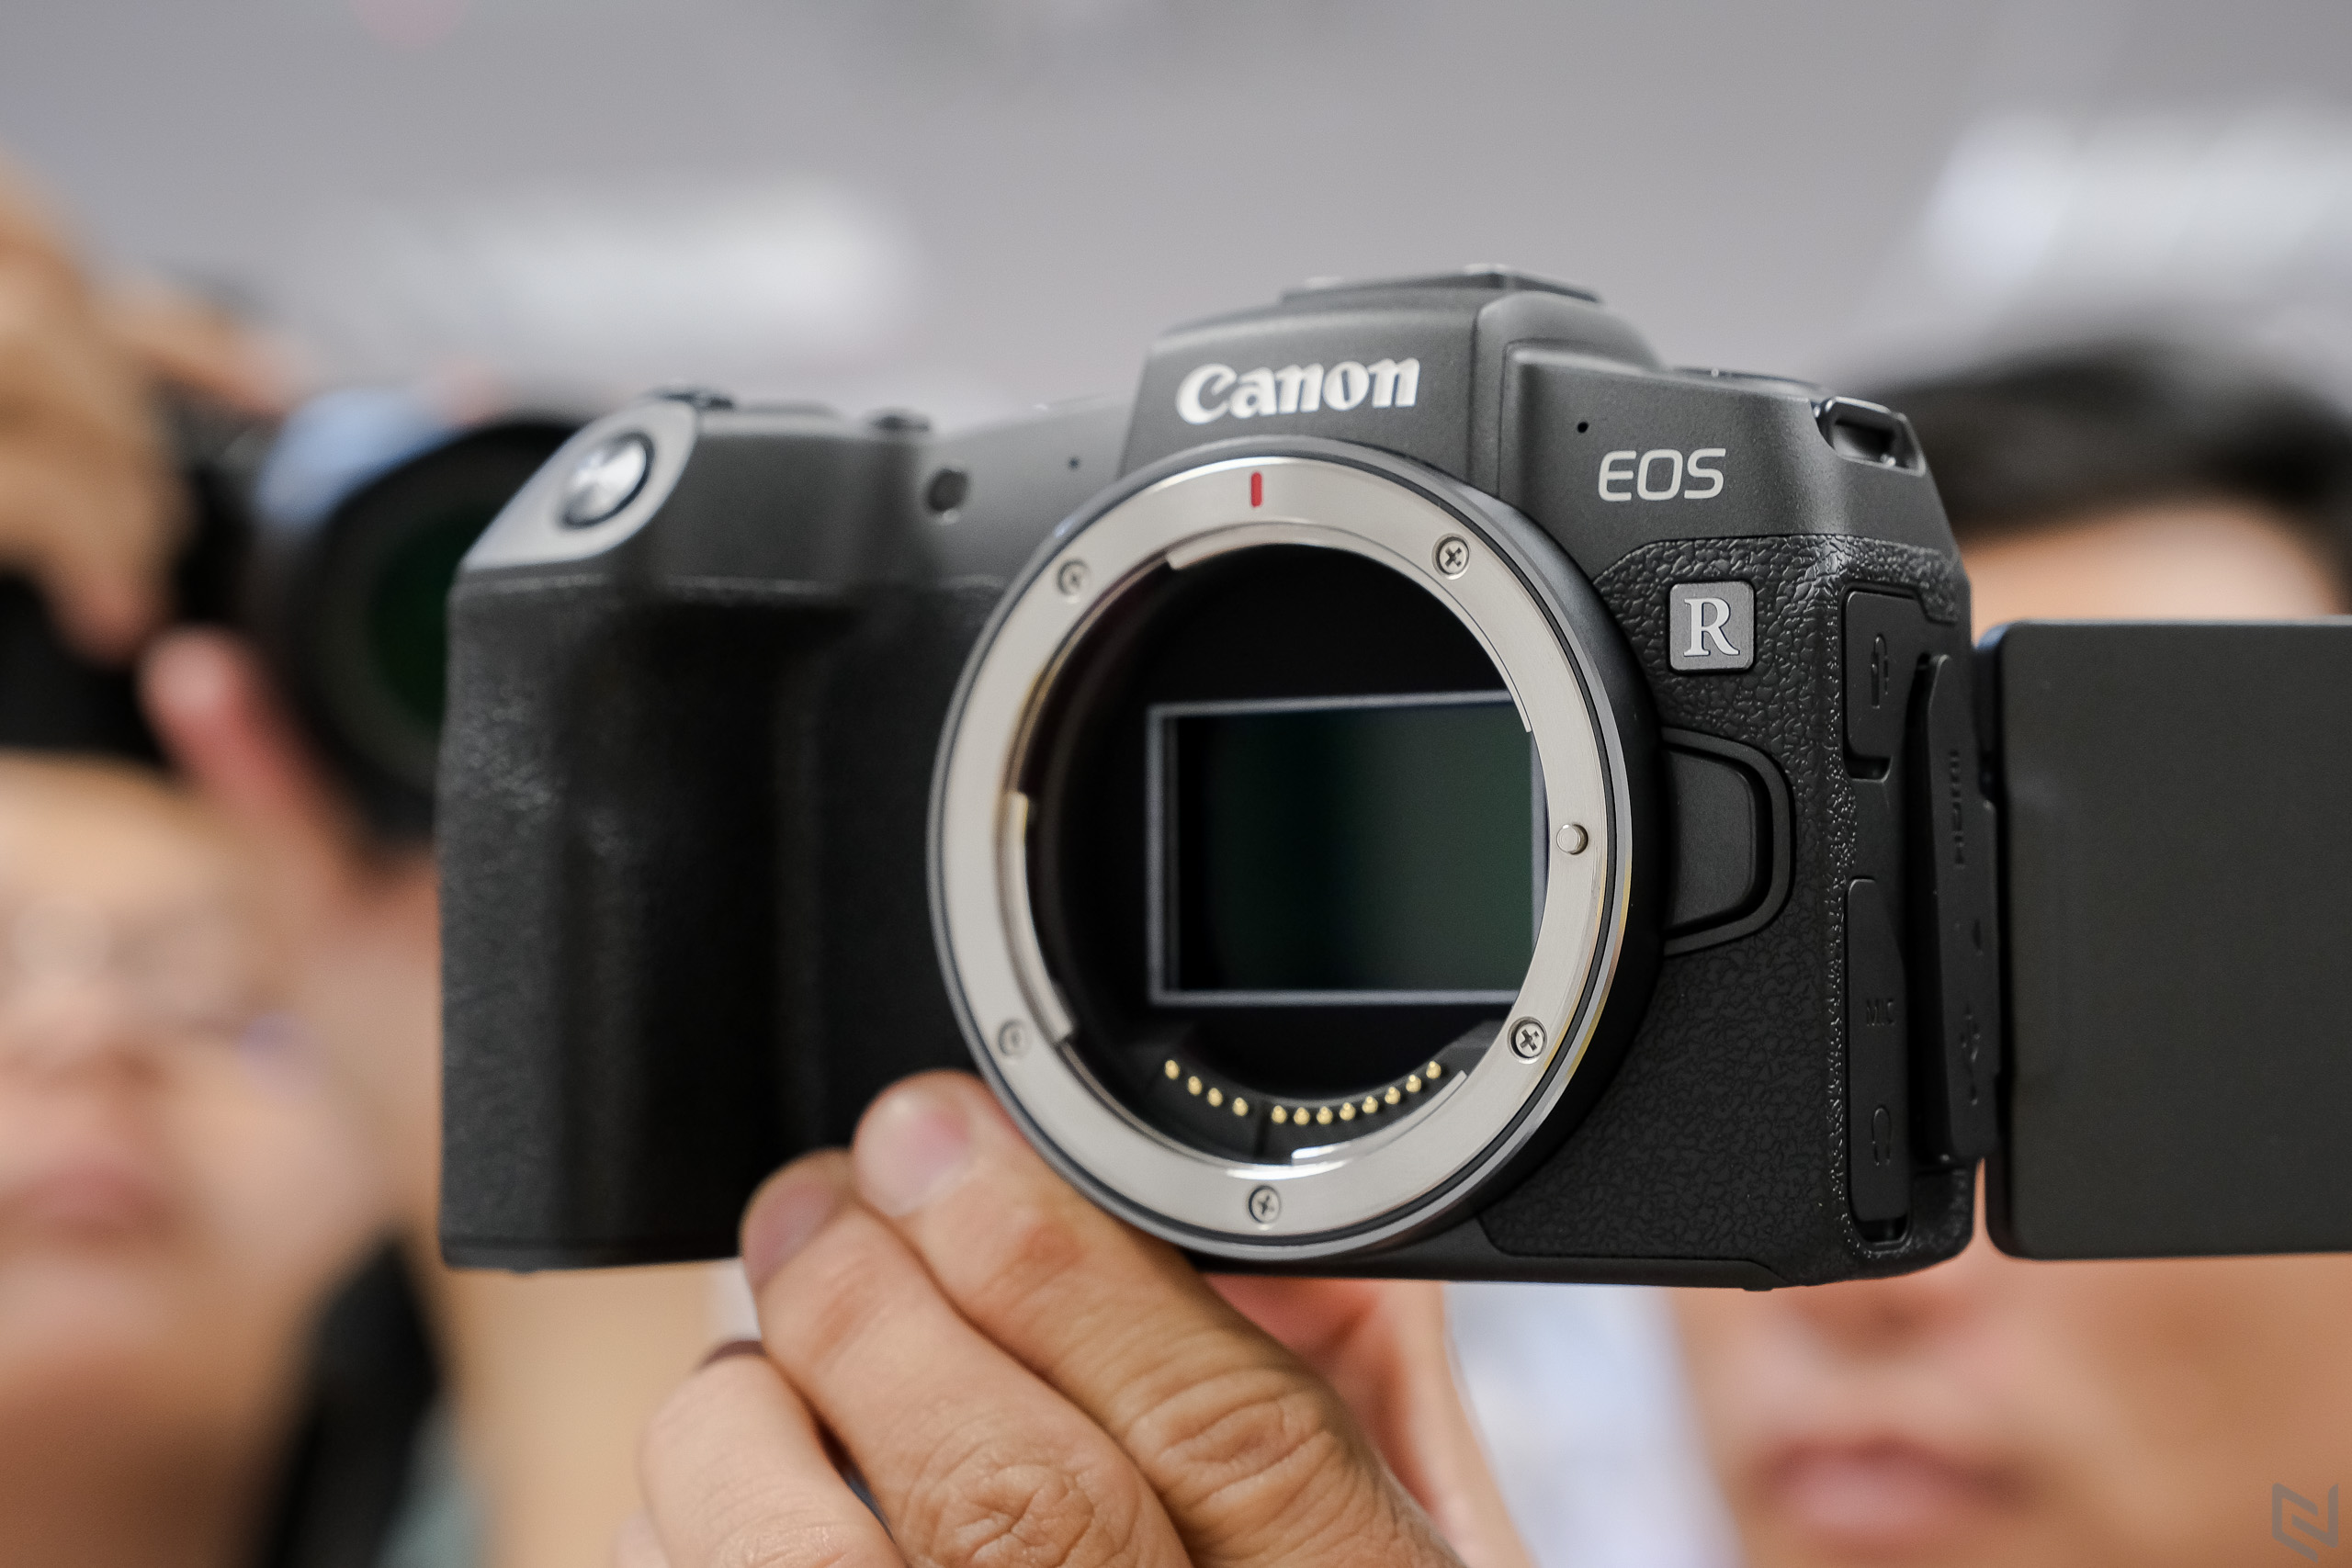 Canon ra mắt máy ảnh full-frame EOS RP tại Việt Nam, lựa chọn cho start up photographer, giá 38 triệu